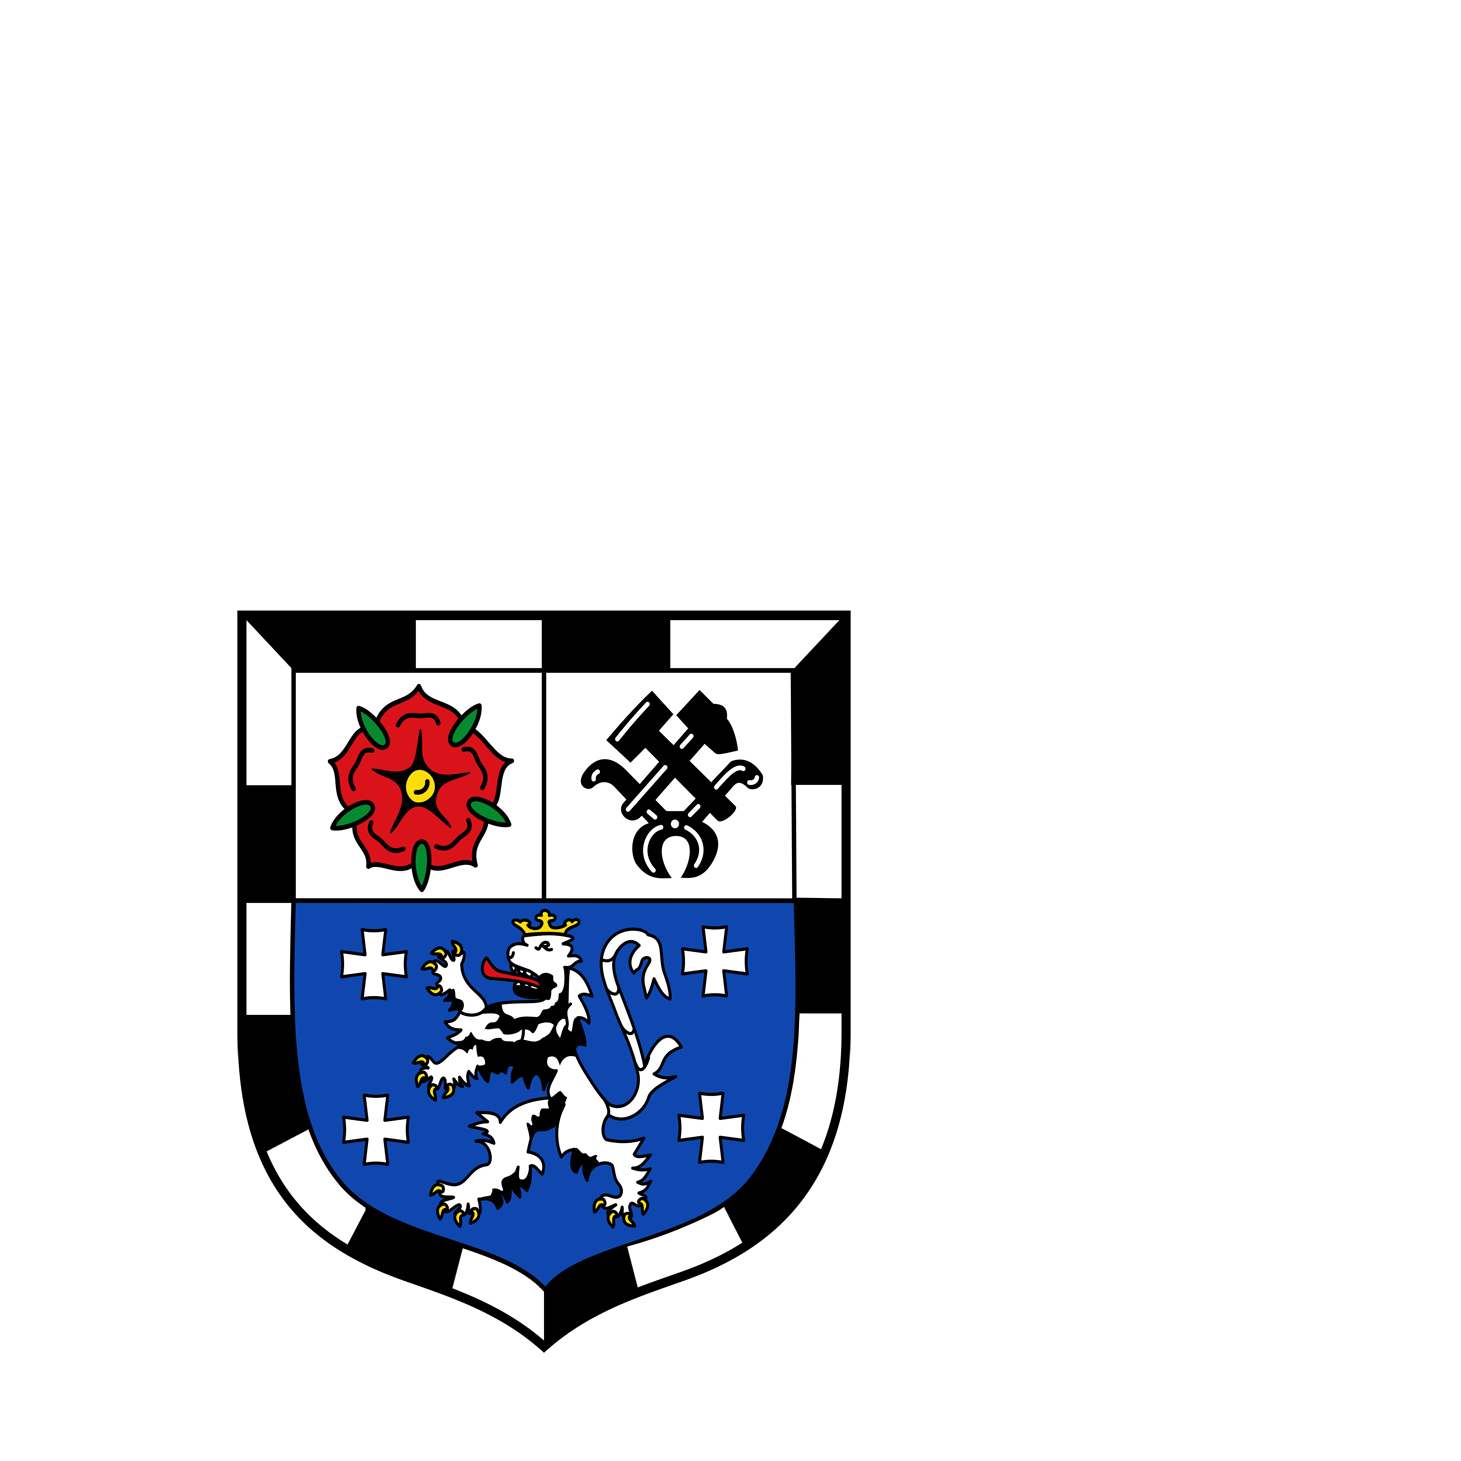 Wappen der Landeshauptstadt Saarbrücken - © Landeshauptstadt Saarbrücken